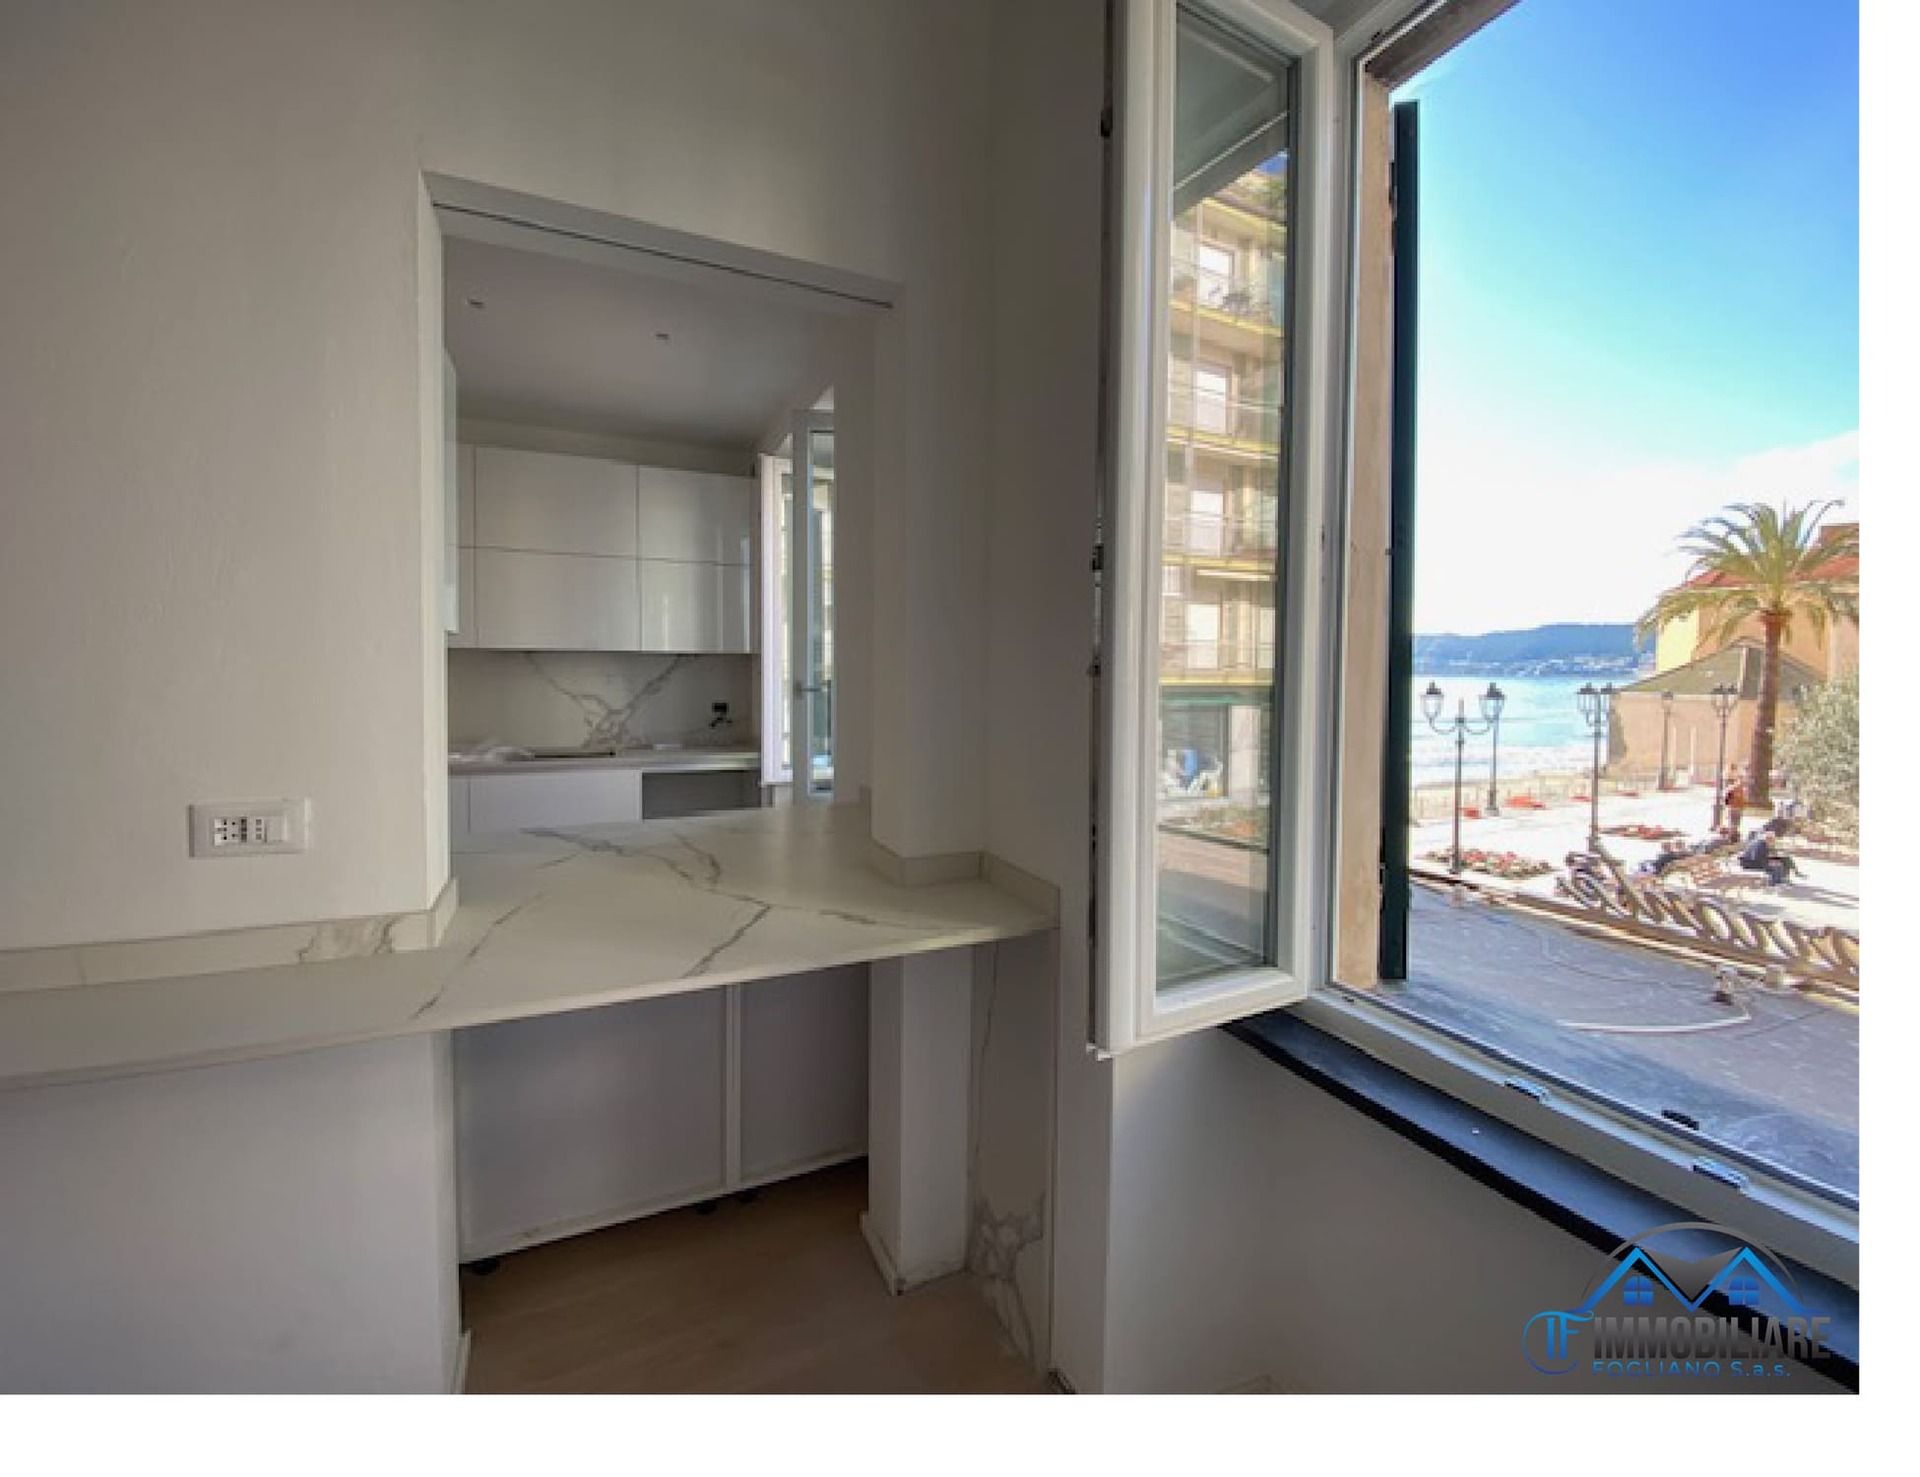 For sale apartment in quiet zone Alassio Liguria